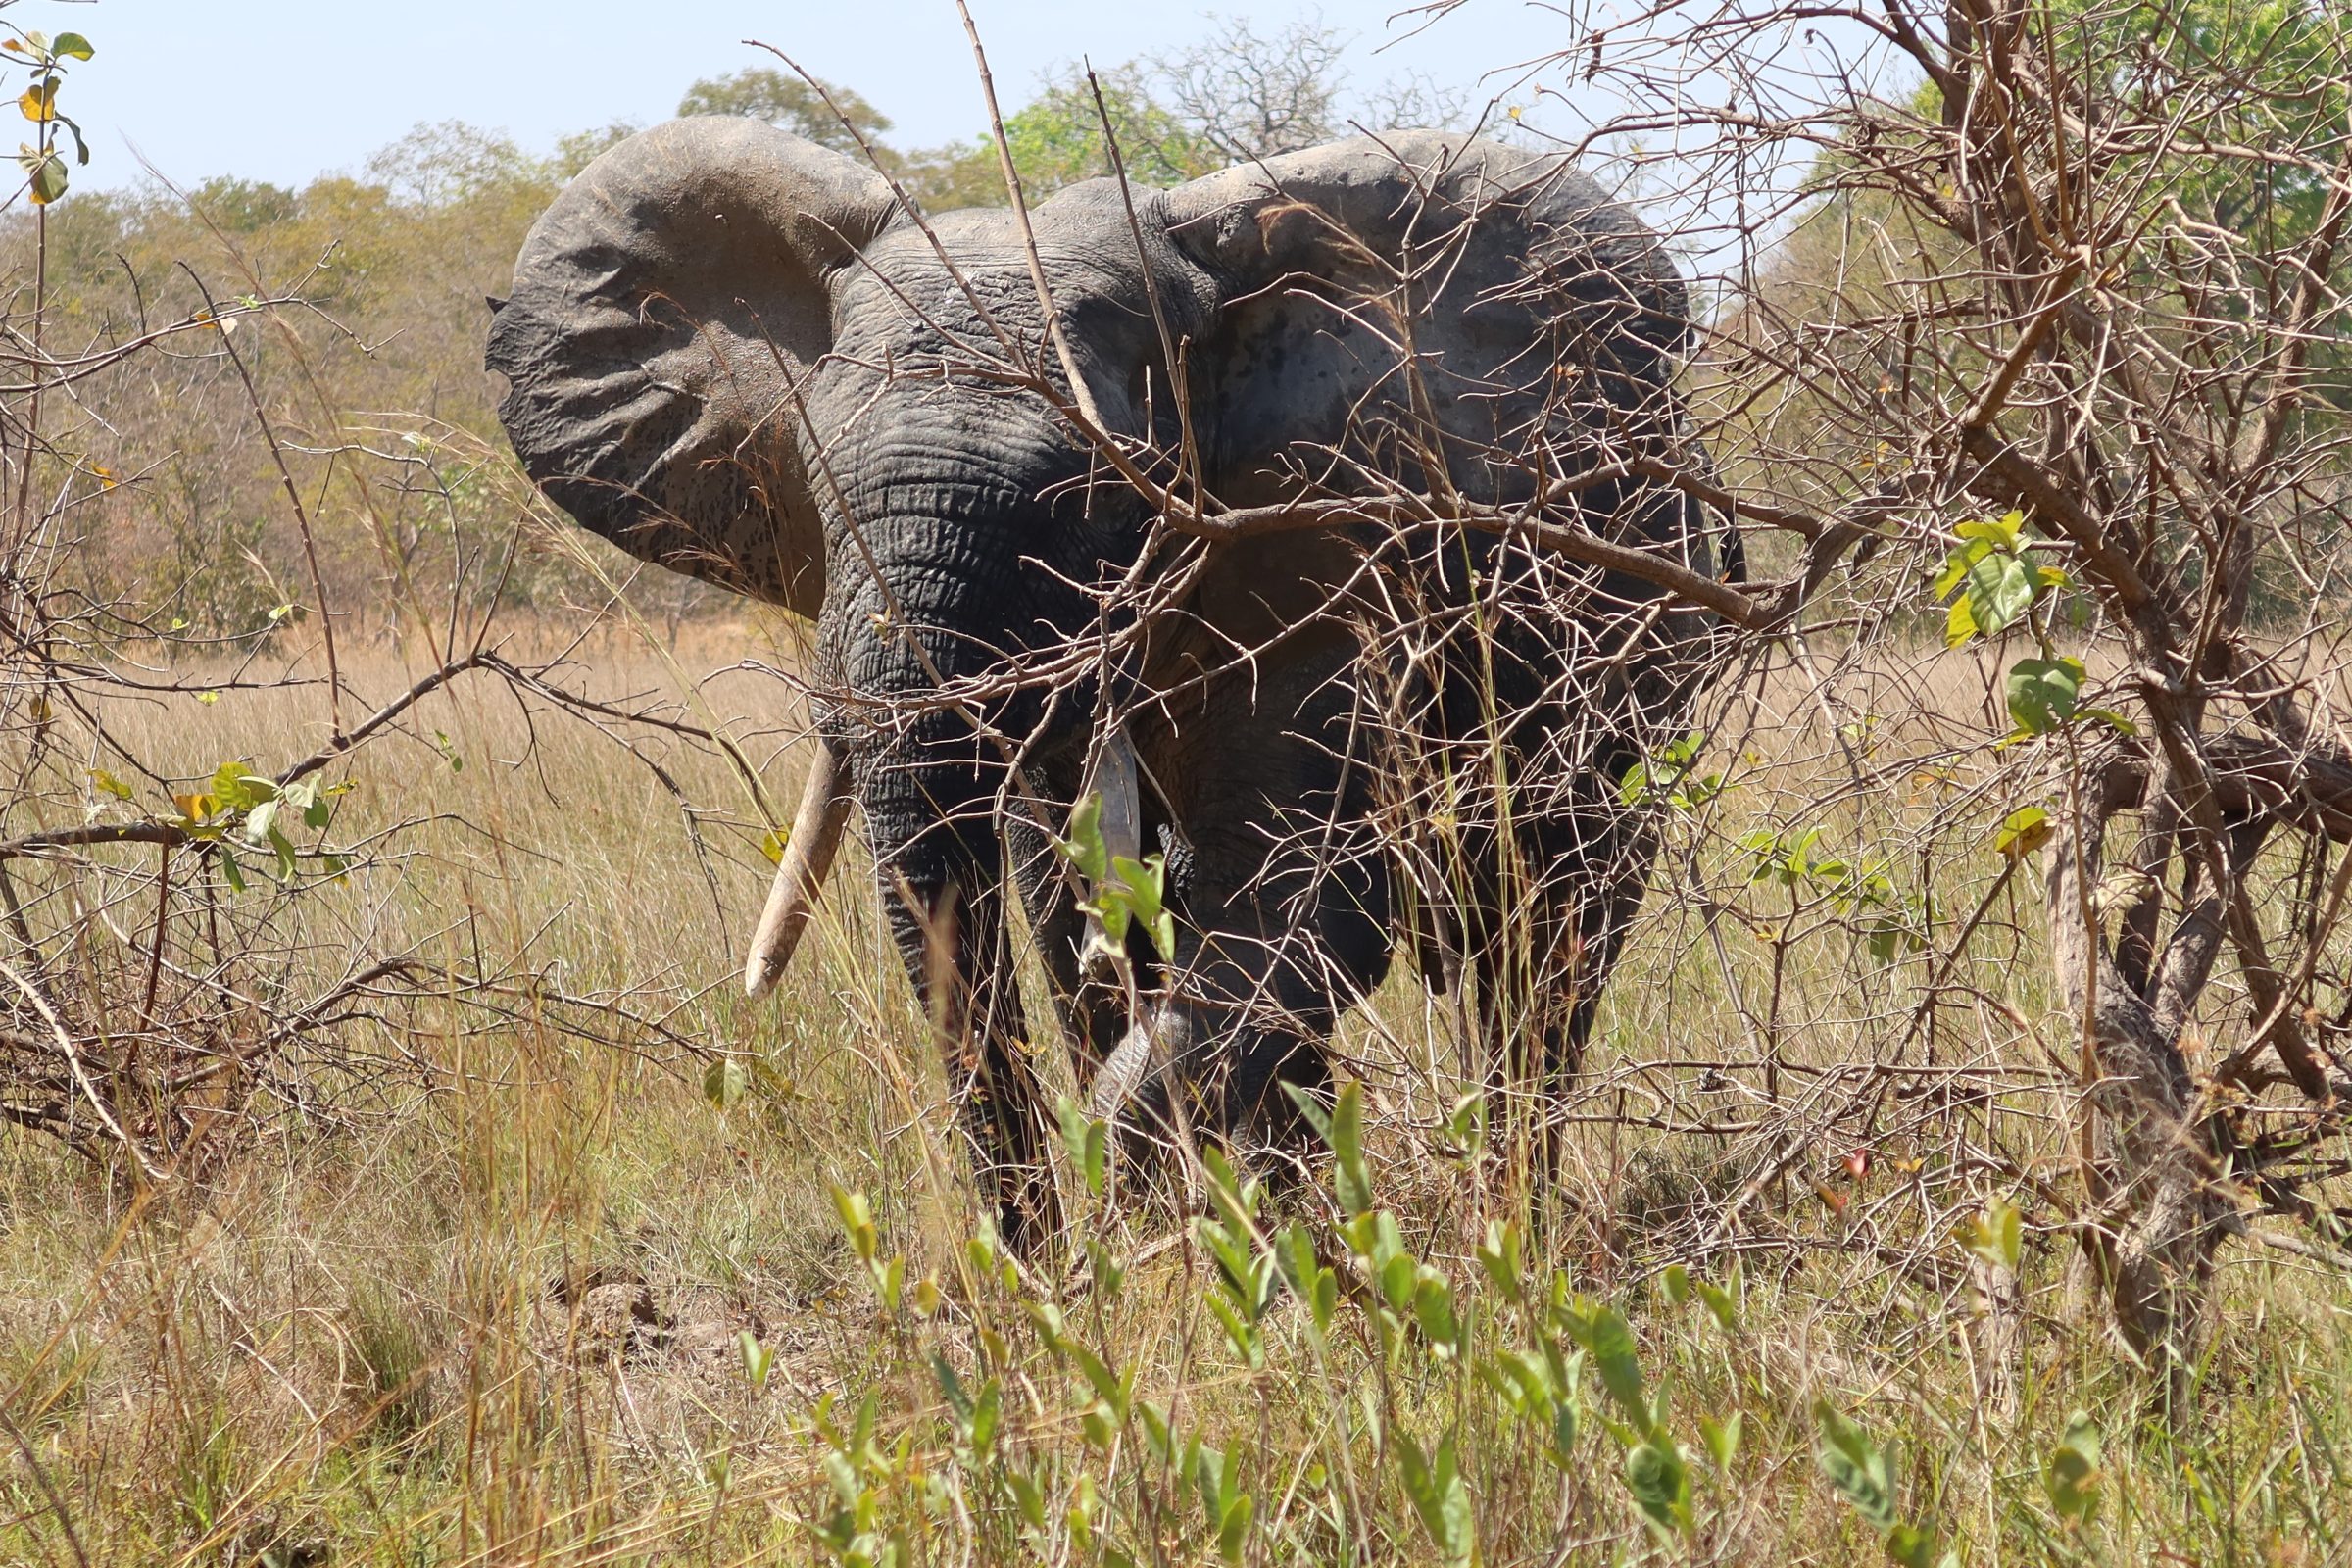 An elephant in Mole National Park, Ghana.